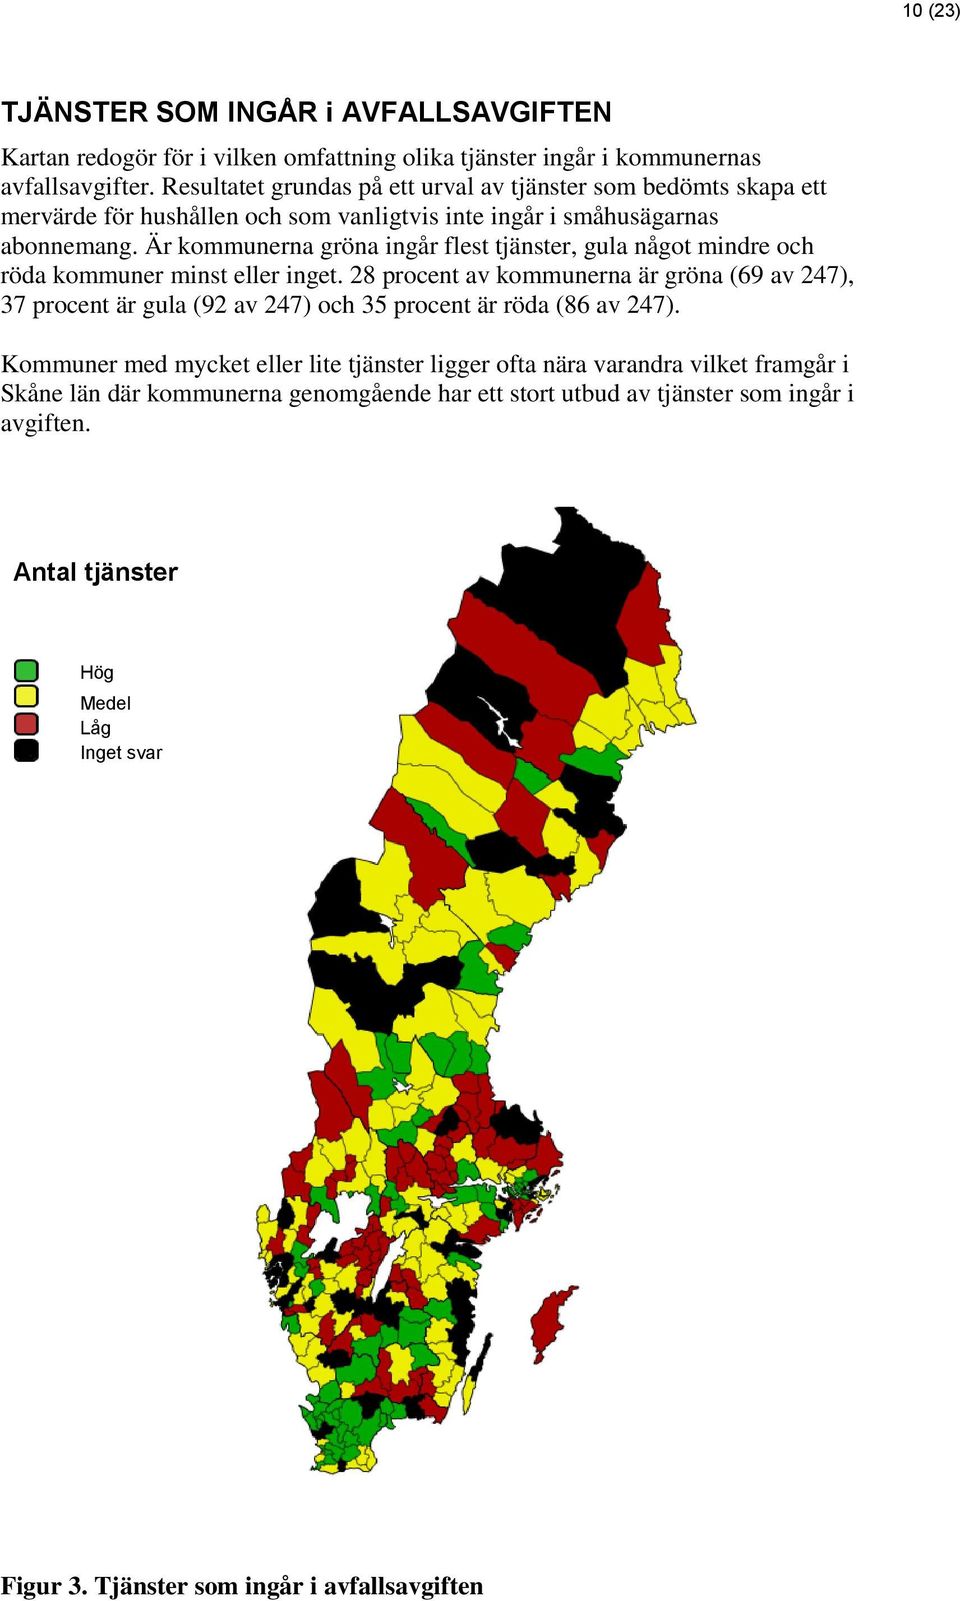 Är kommunerna gröna ingår flest tjänster, gula något mindre och röda kommuner minst eller inget.